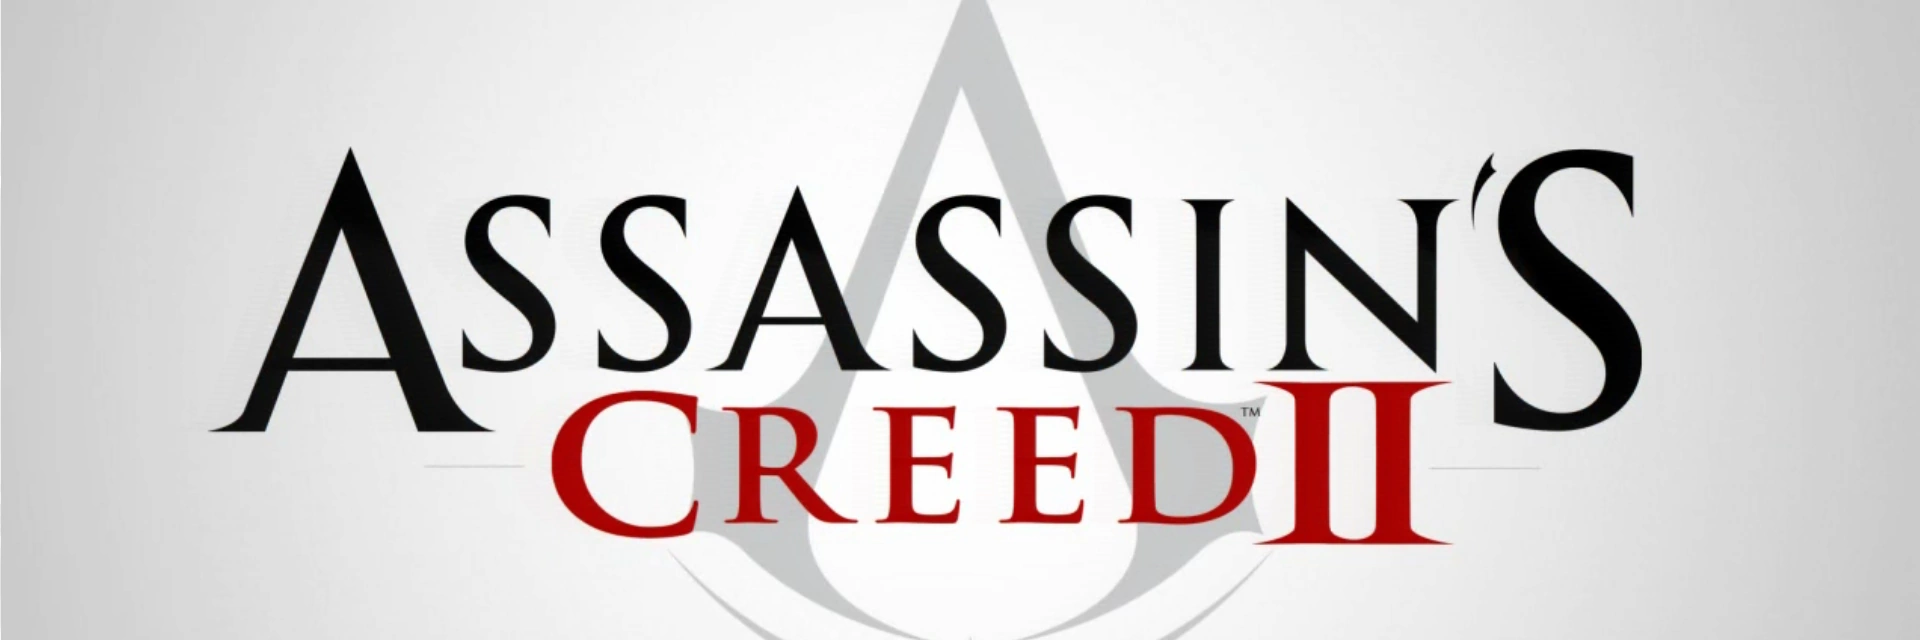 Assassins.Creed2 .banner2